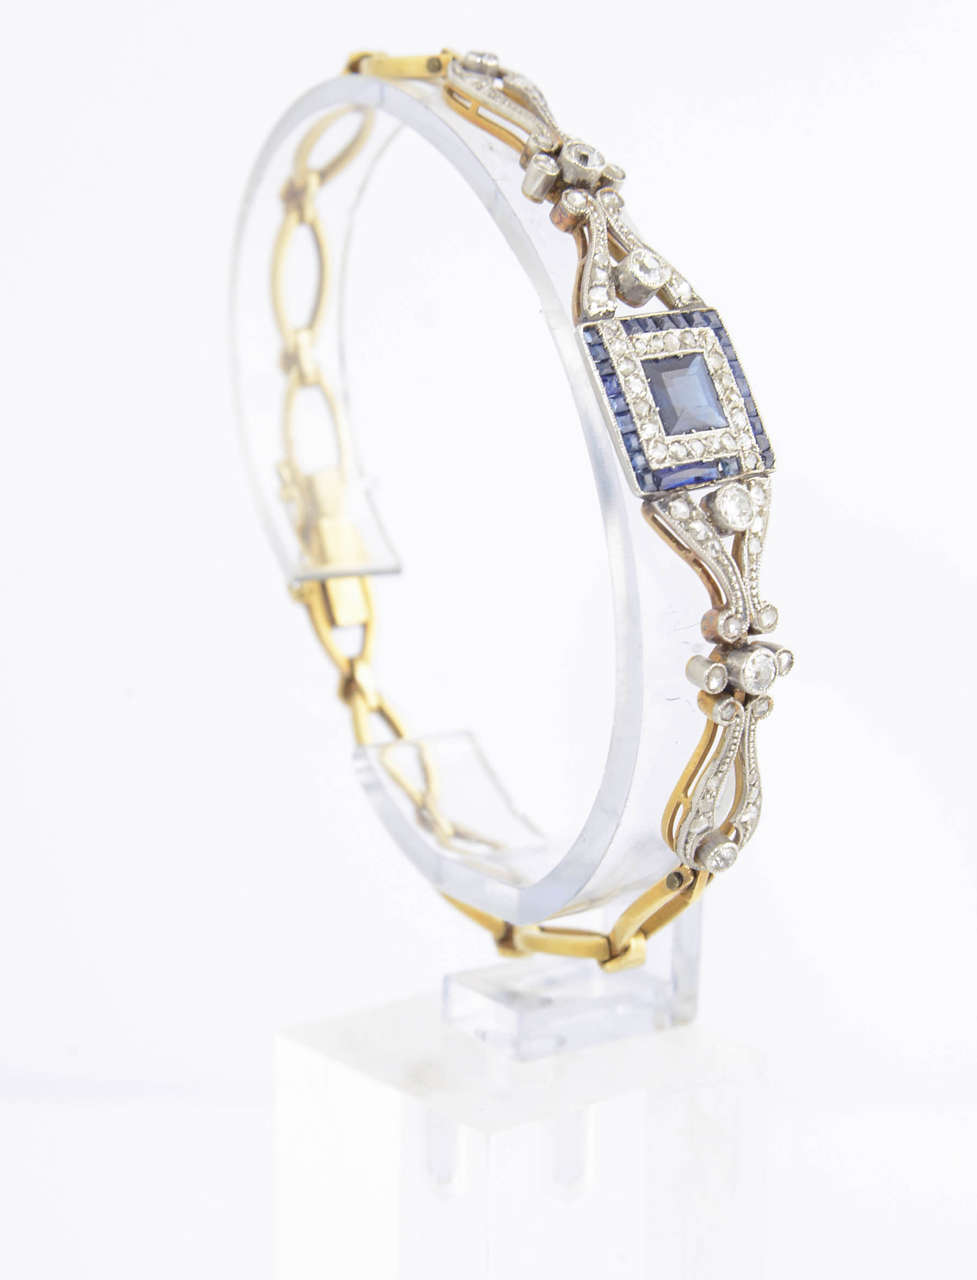 Round Cut Belle Époque Sapphire Diamond Gold Platinum Bracelet For Sale